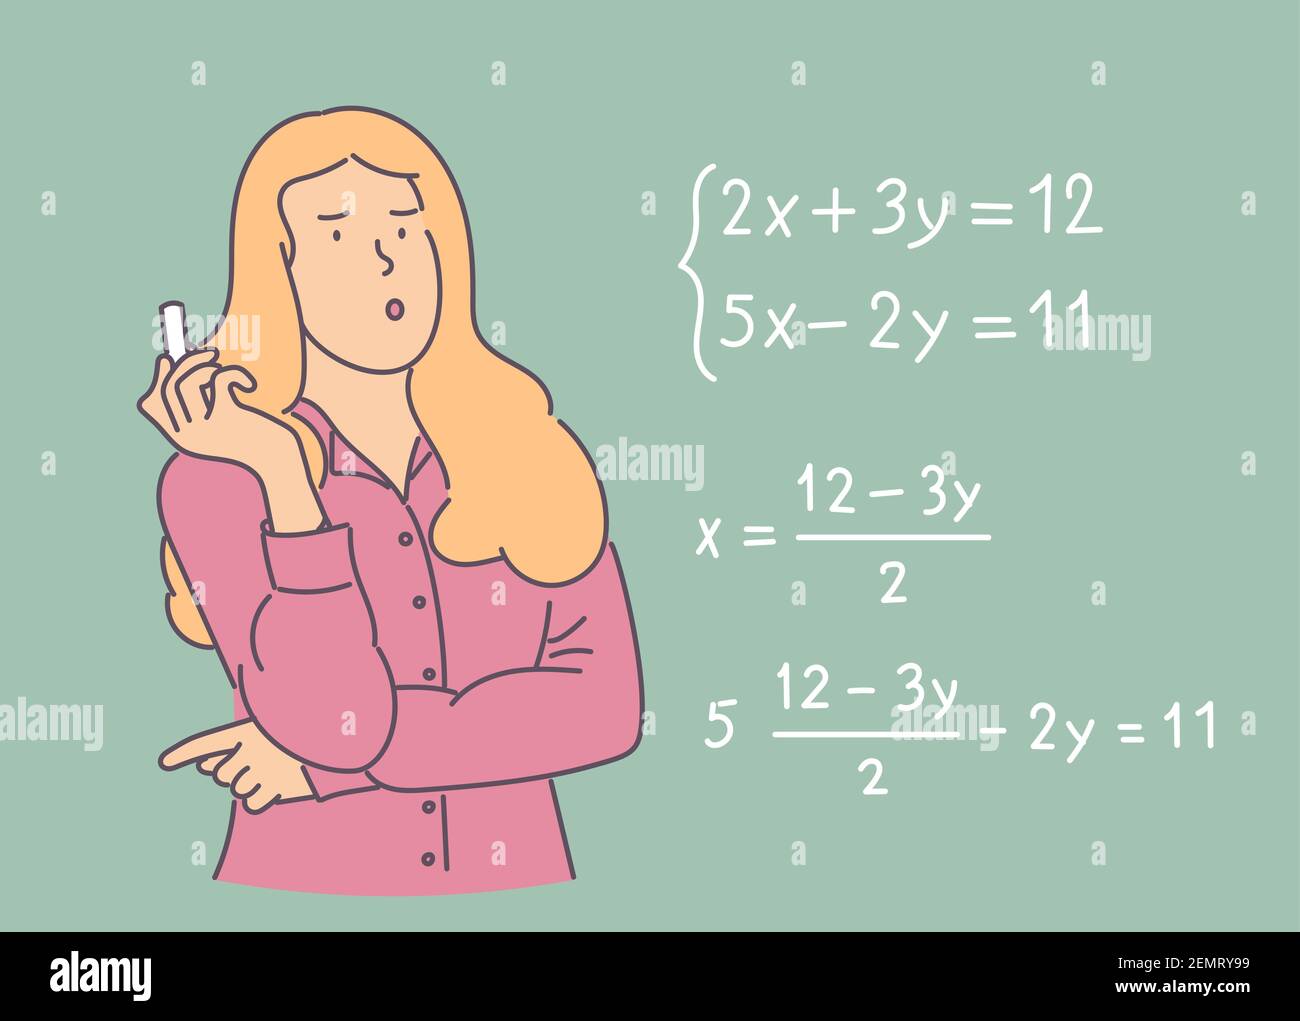 Jeune écolière pensive et réfléchie debout près du tableau noir et en train de résoudre l'équation mathématique avec la craie. Processus éducatif Illustration de Vecteur